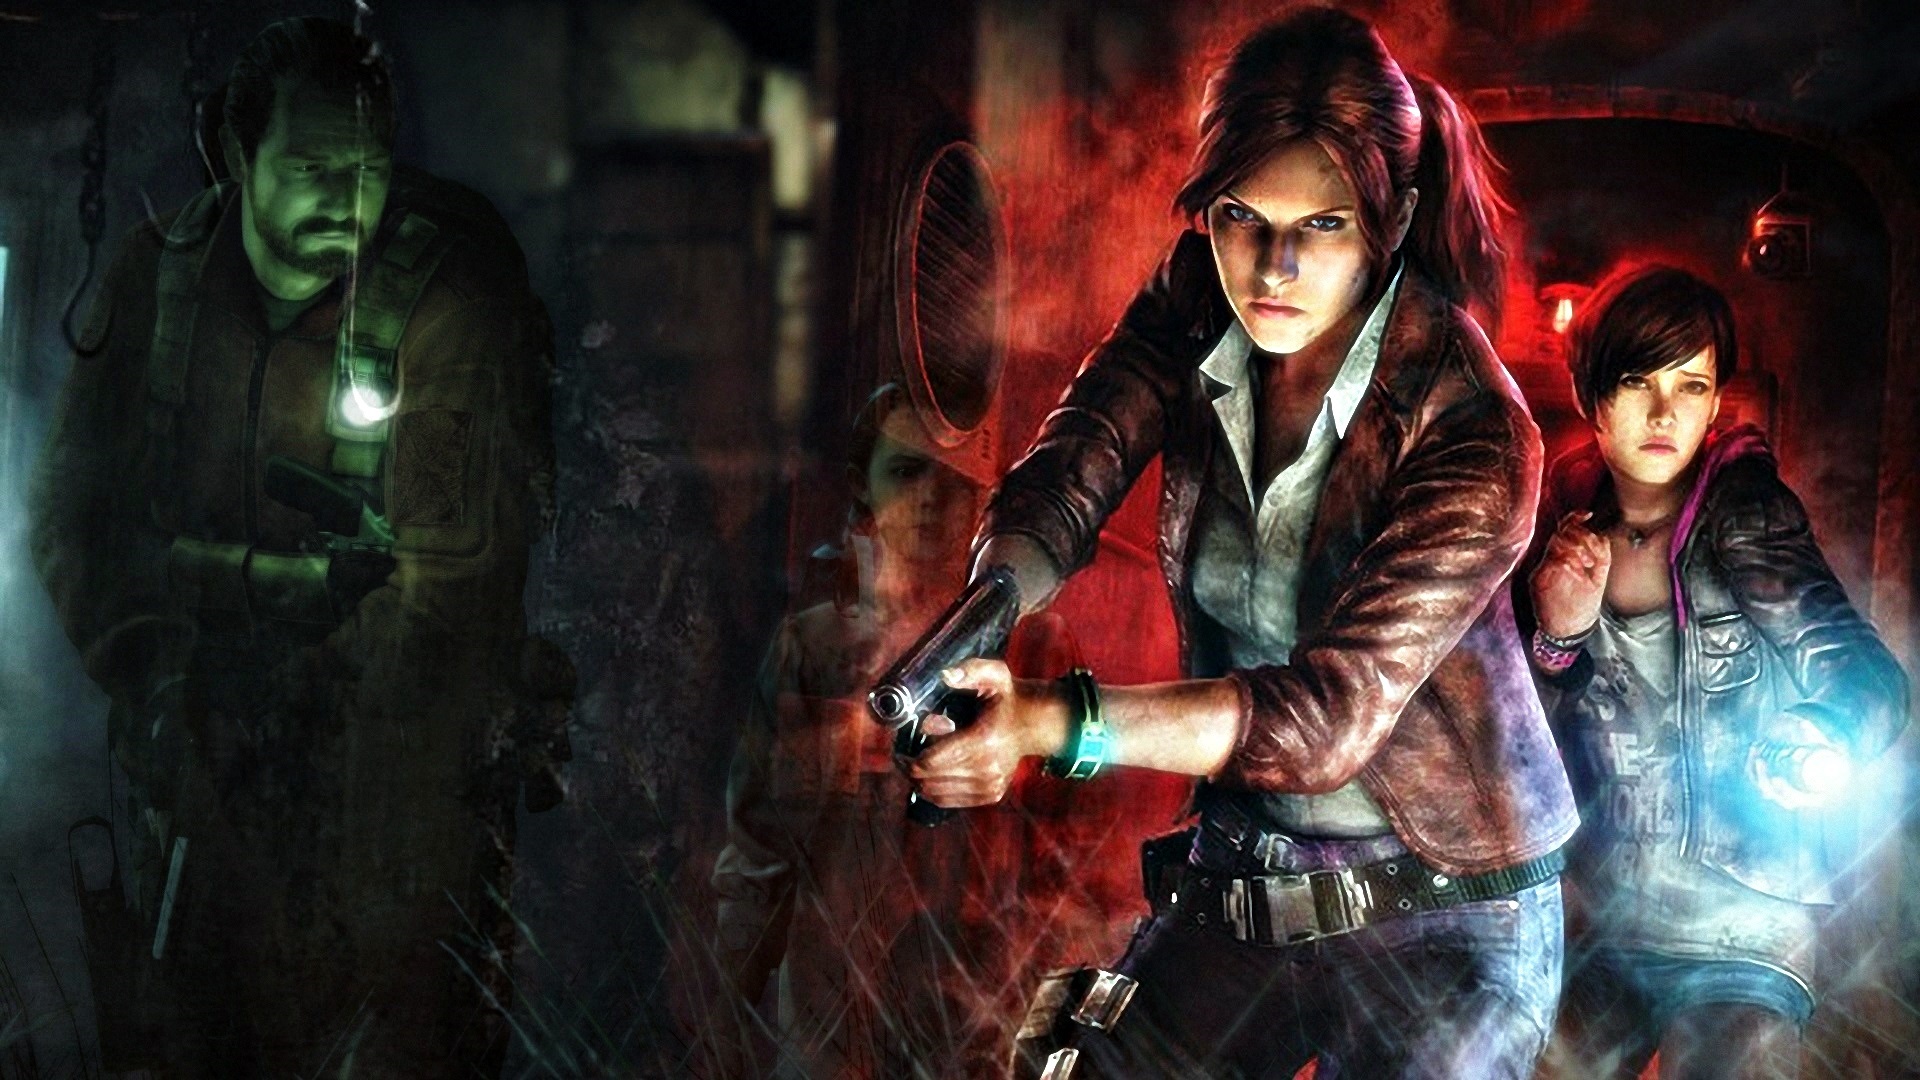 Melhores papéis de parede de Resident Evil Revelations 2 para tela do telefone